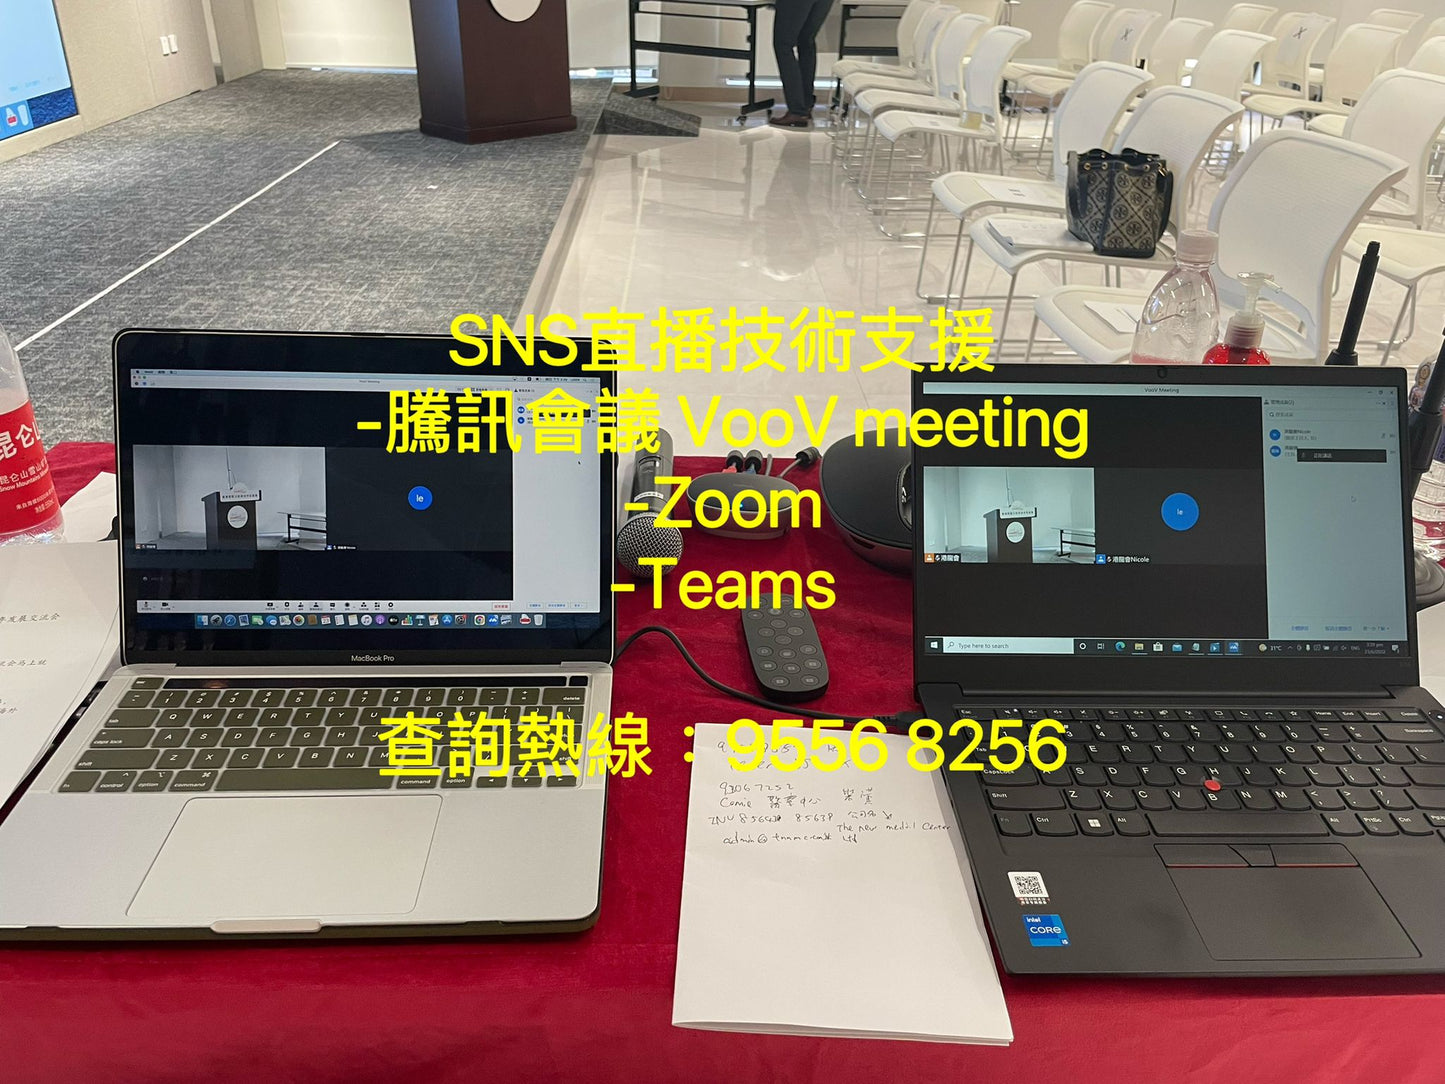 SNS 現場直播技術支援-騰訊會議 VooV Meeting-Zoom Meeting-Teams